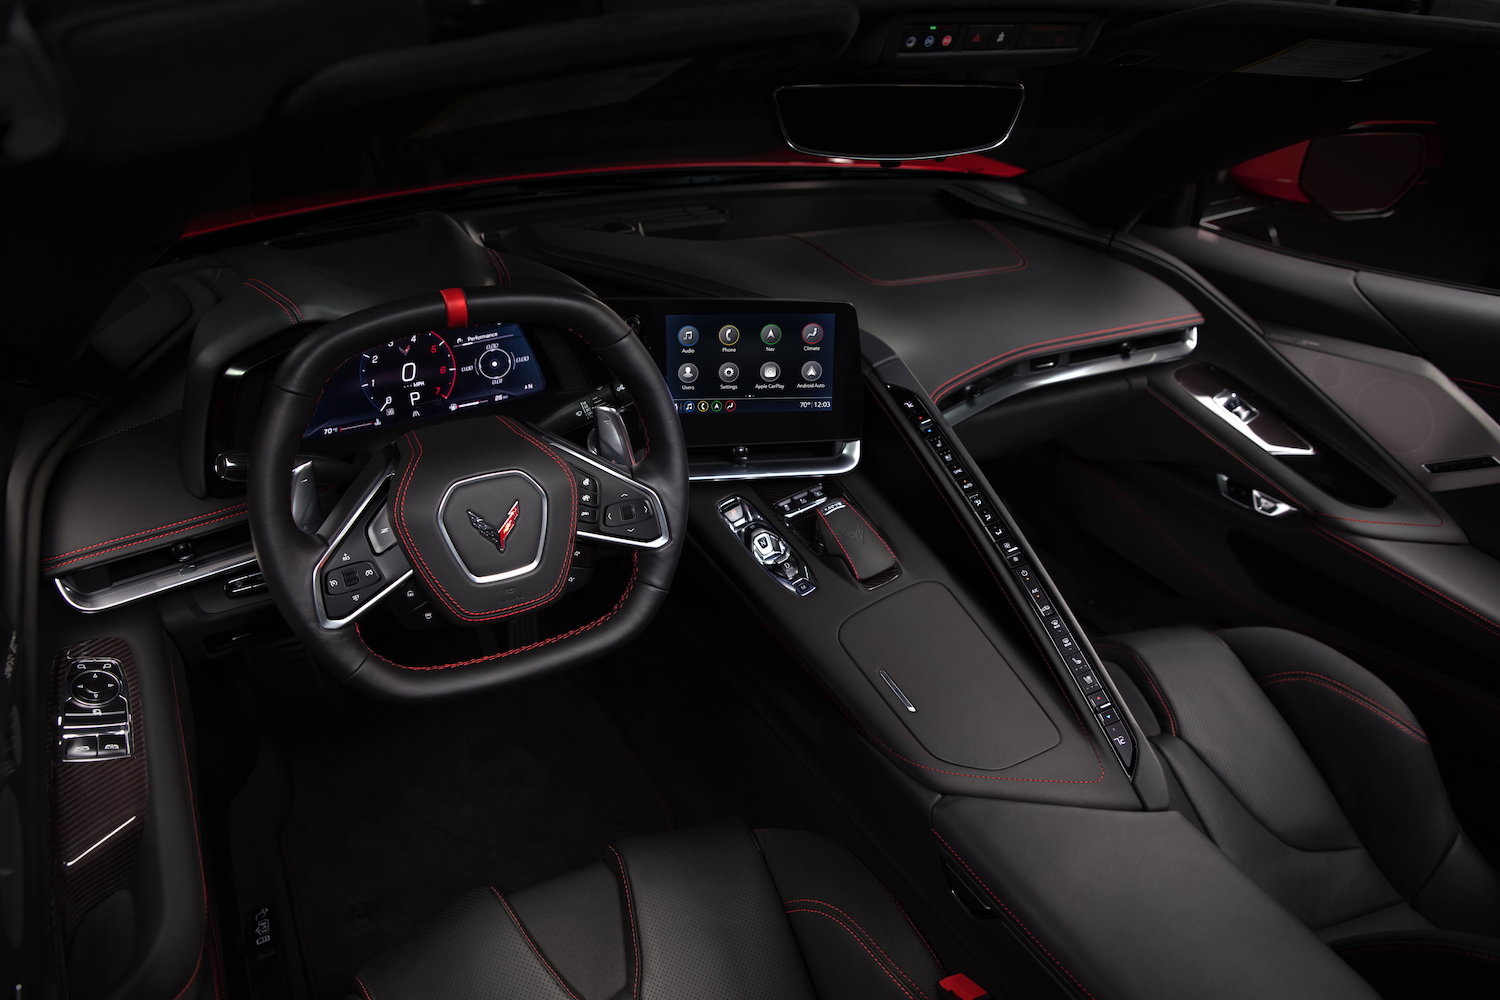 2020-Chevrolet-Corvette-C8-interior-004.jpg